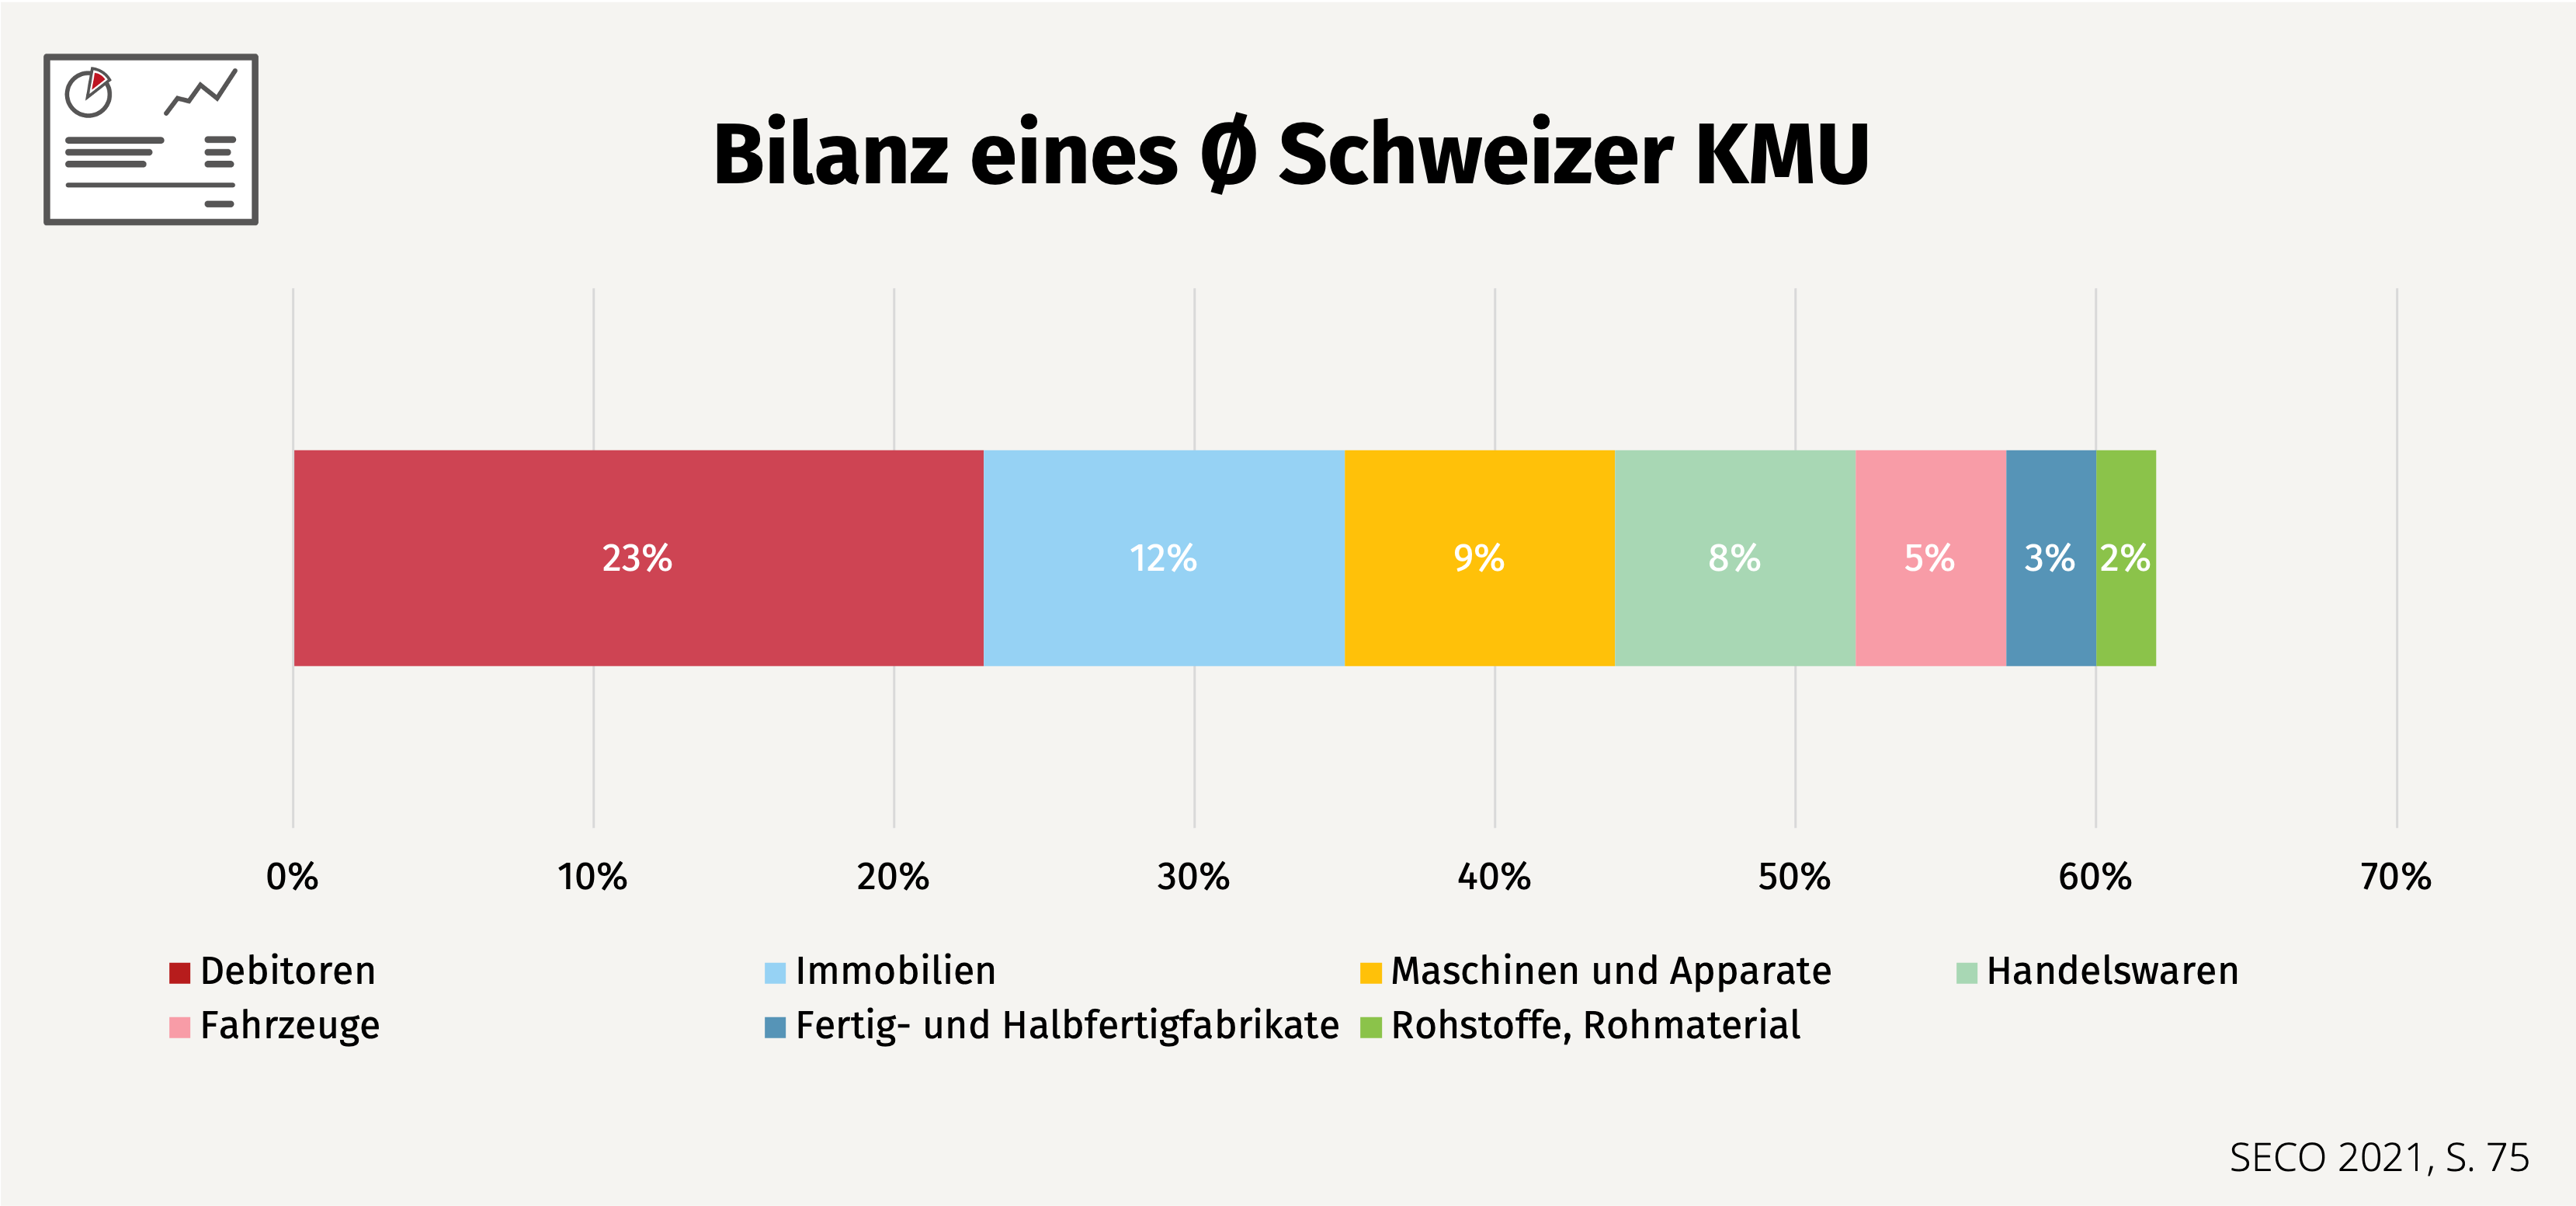 bilanz_eines_durchschnittlichen_schweizer_kmu